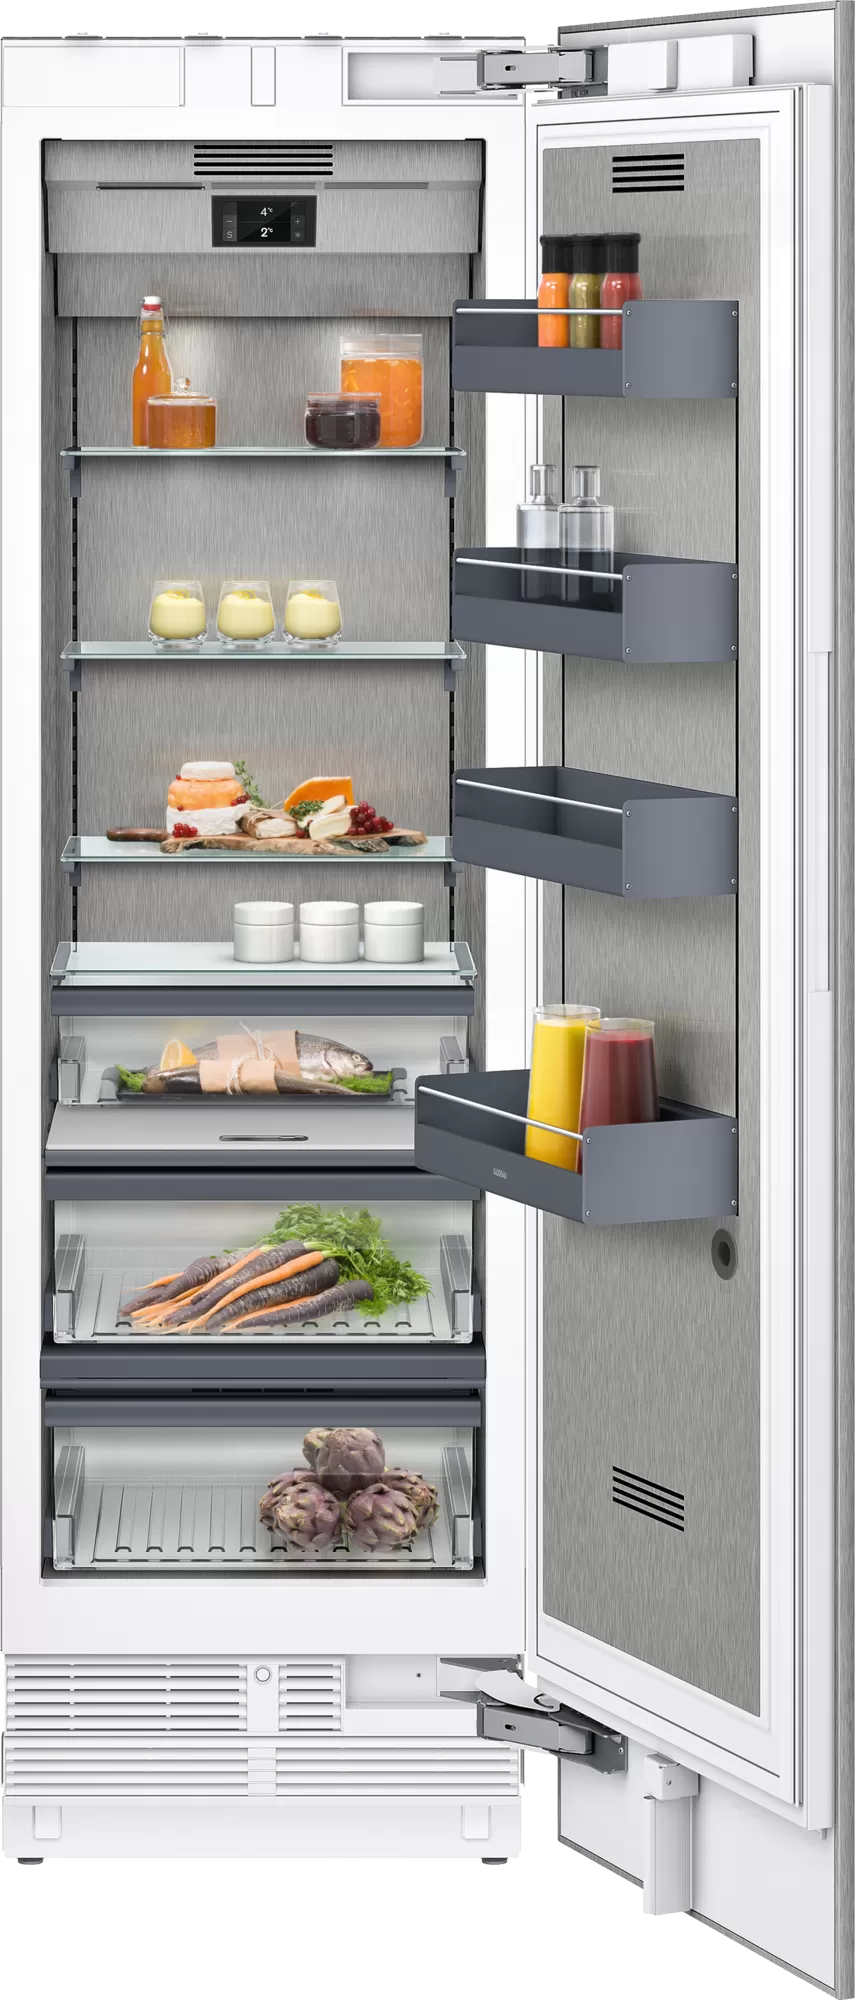 Модельный ряд и размеры холодильников «Индезит»